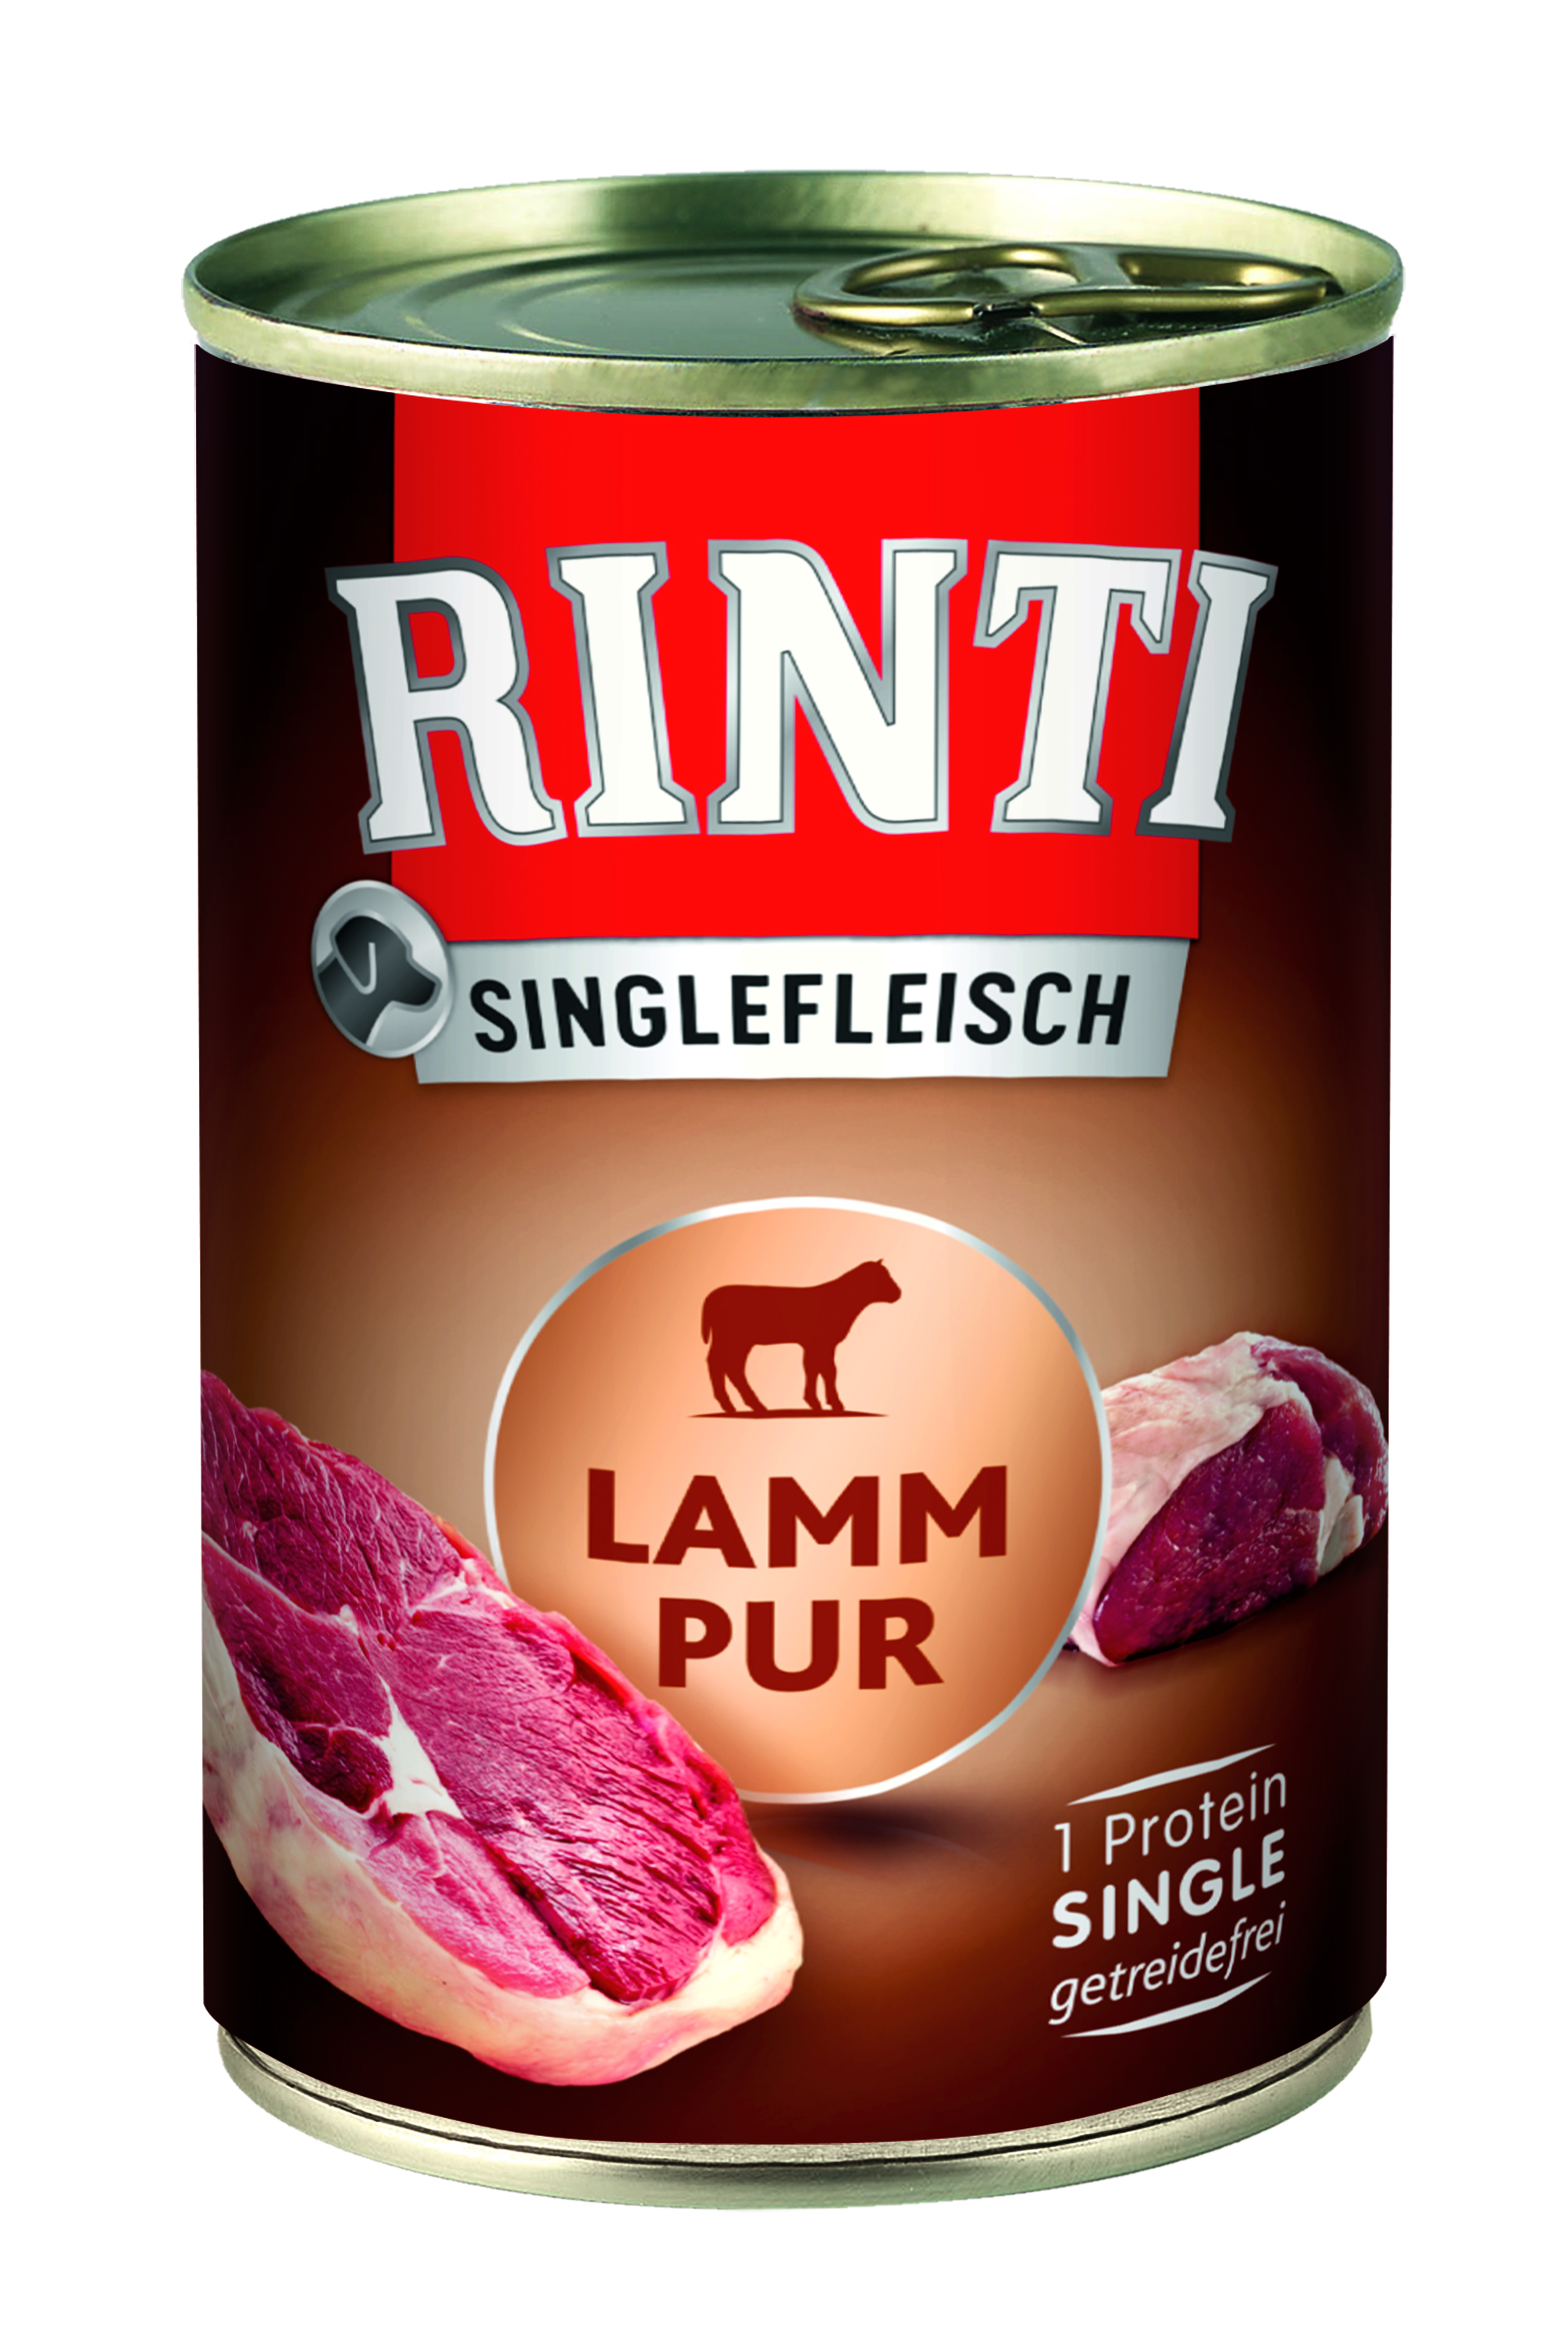 Rinti Singlefleisch Lamm Pur 400g